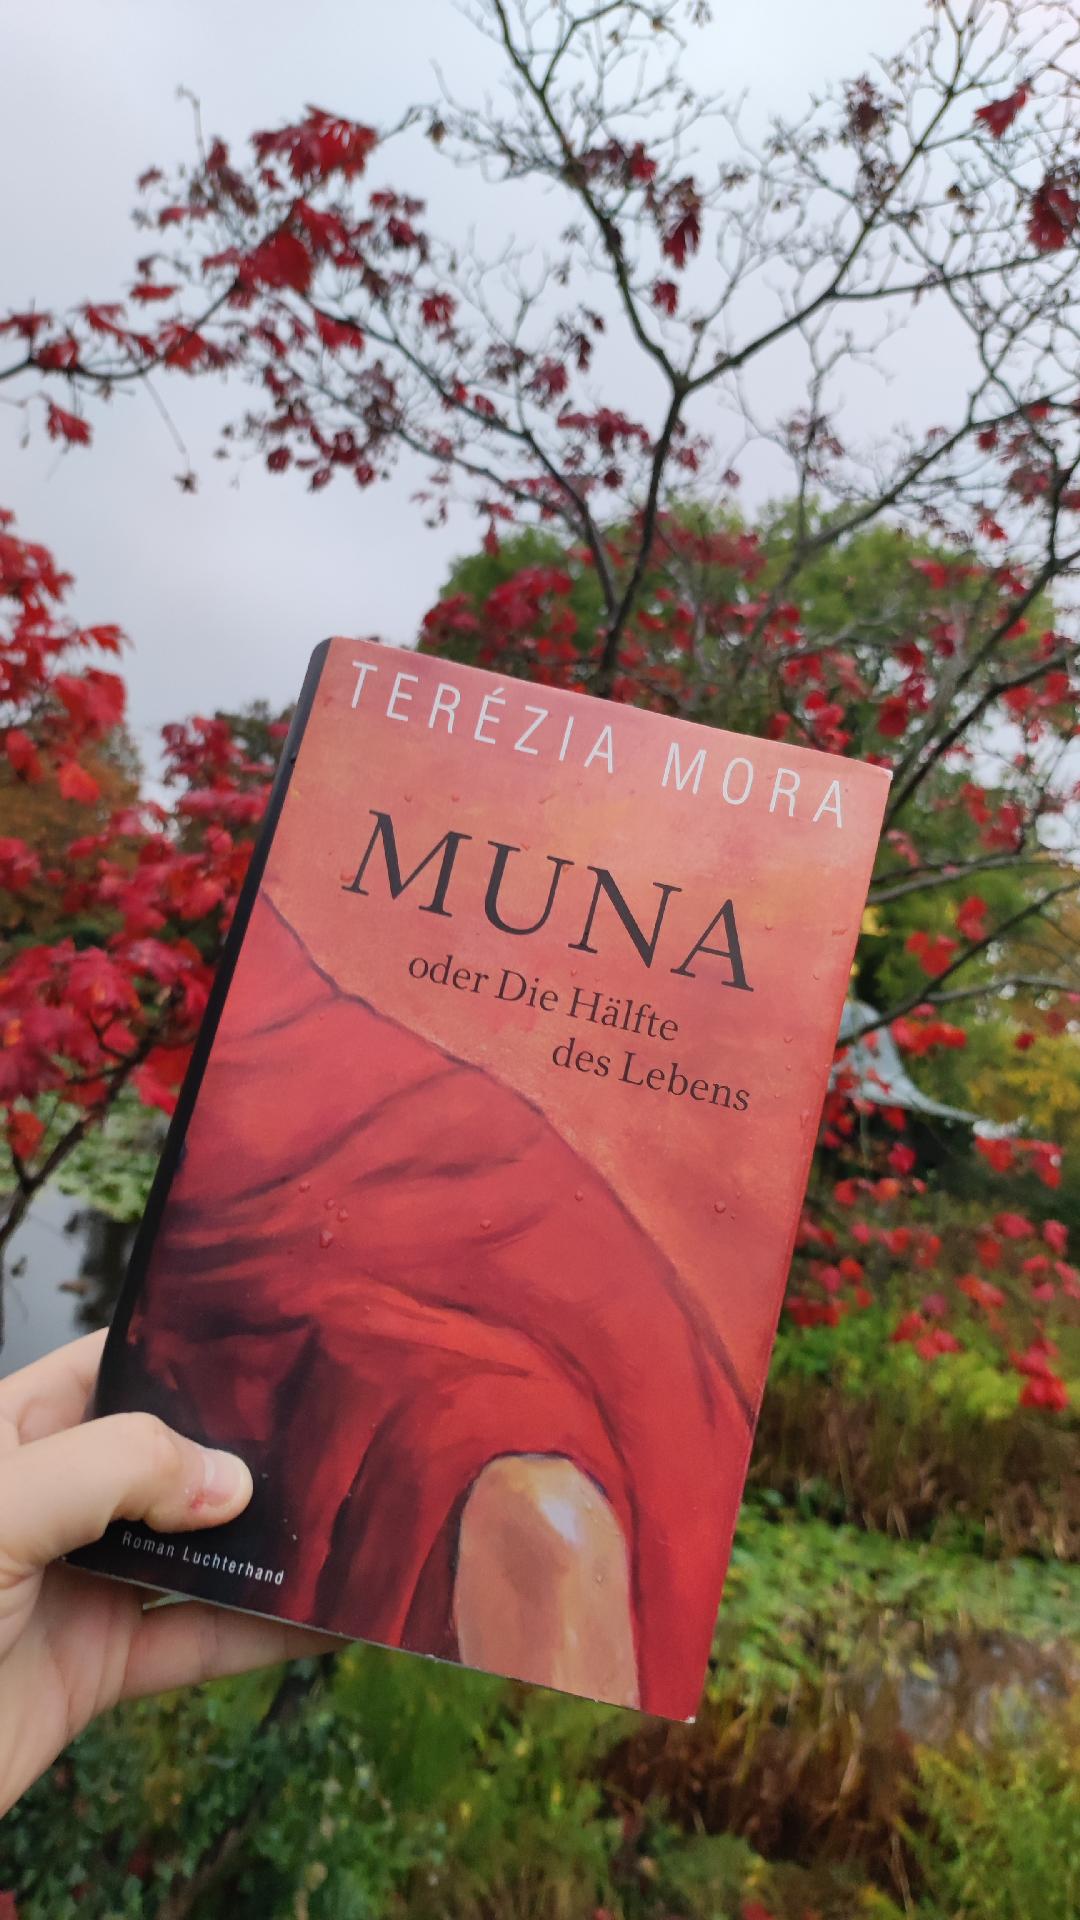 Gefangen in einer toxischen Beziehung – Mora, Terézia: Muna oder Die Hälfte des Lebens